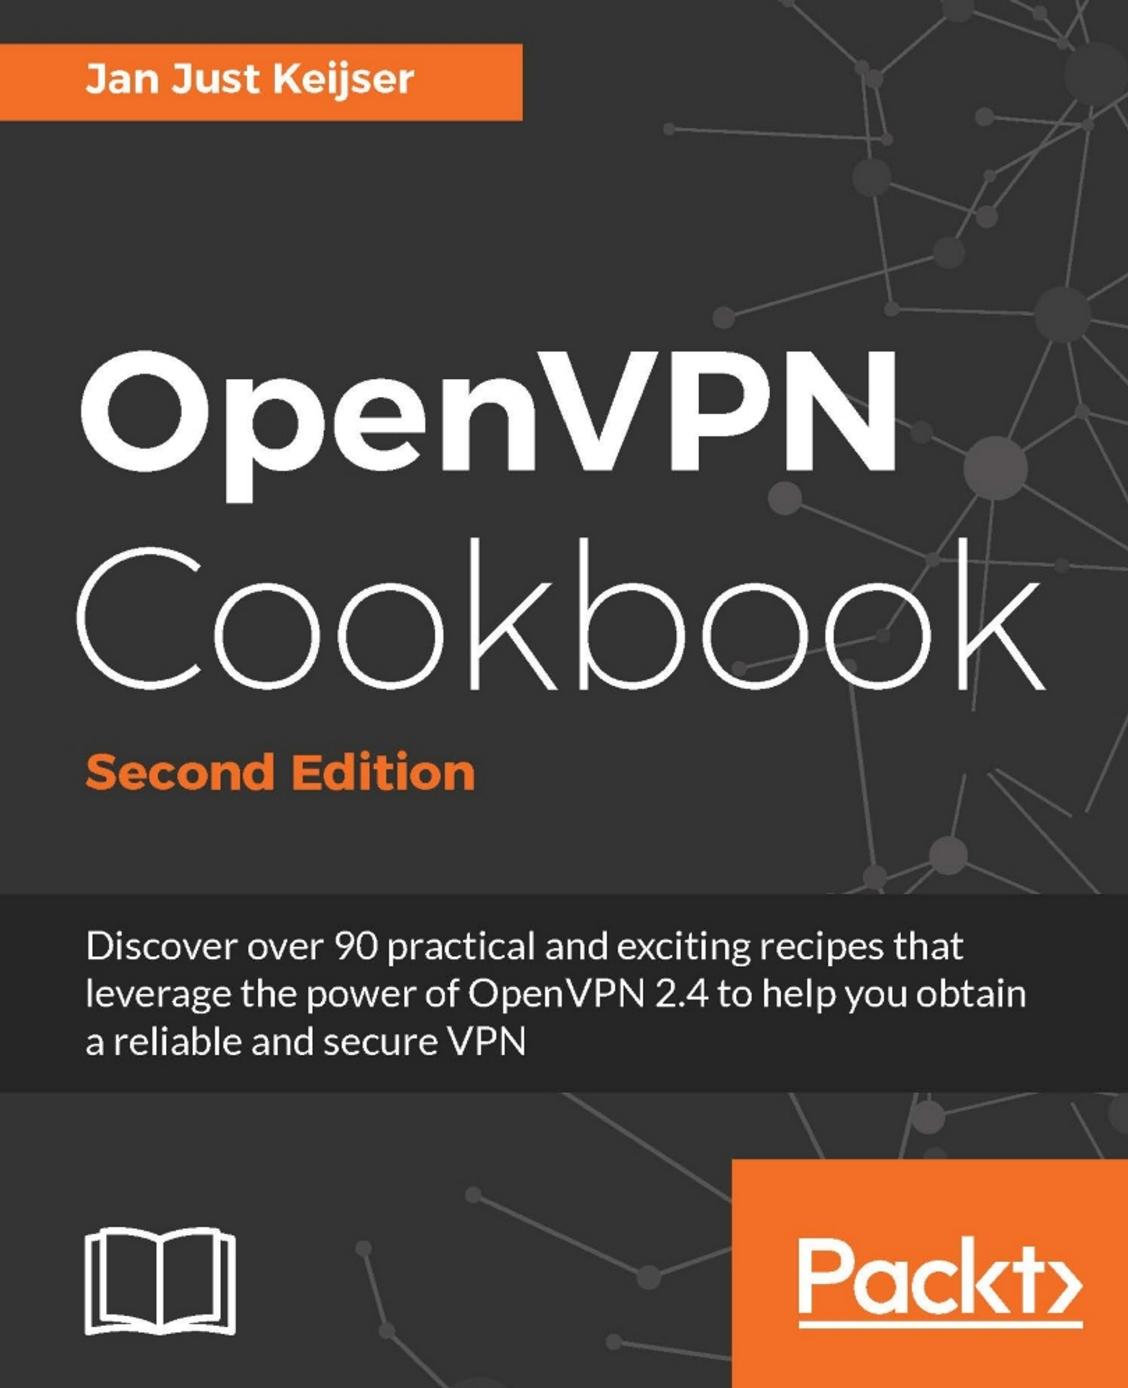 OpenVPN Cookbook - Second Edition